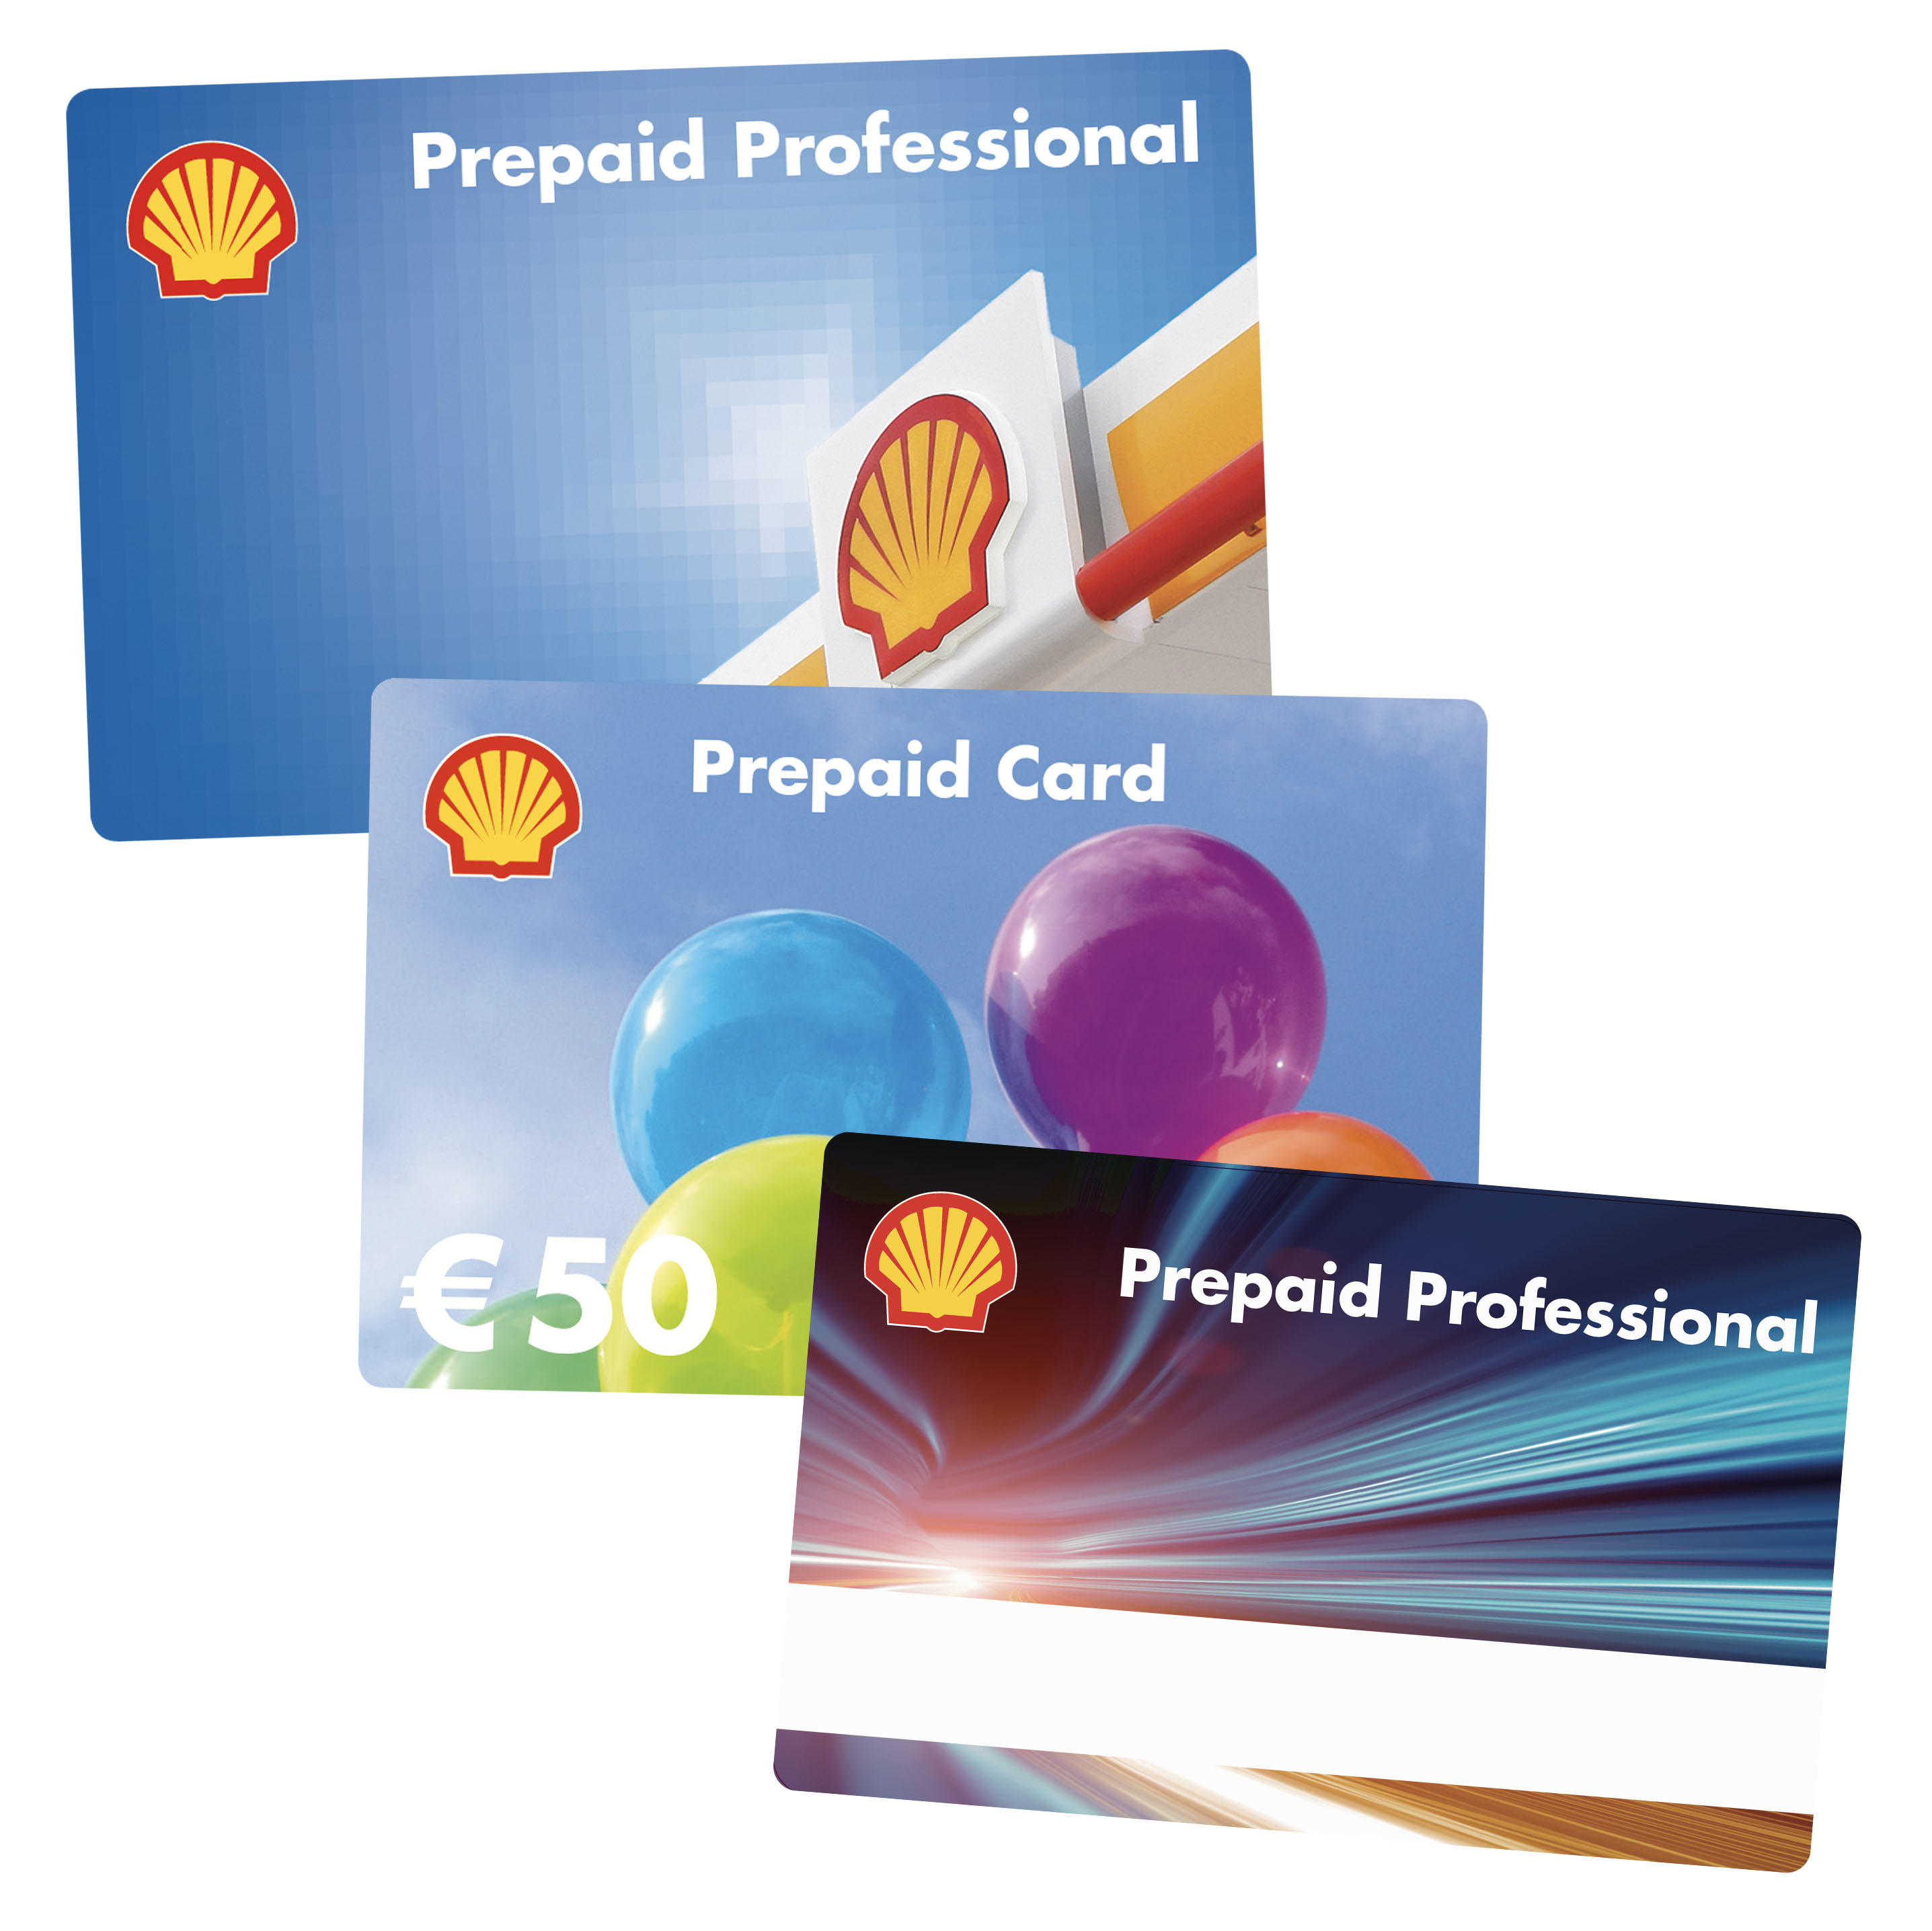 Abgebildet sind drei unterschiedliche Karten der Shell Prepaid Card, die alle für den steuerfreien Sachbezug verwendet werden können.